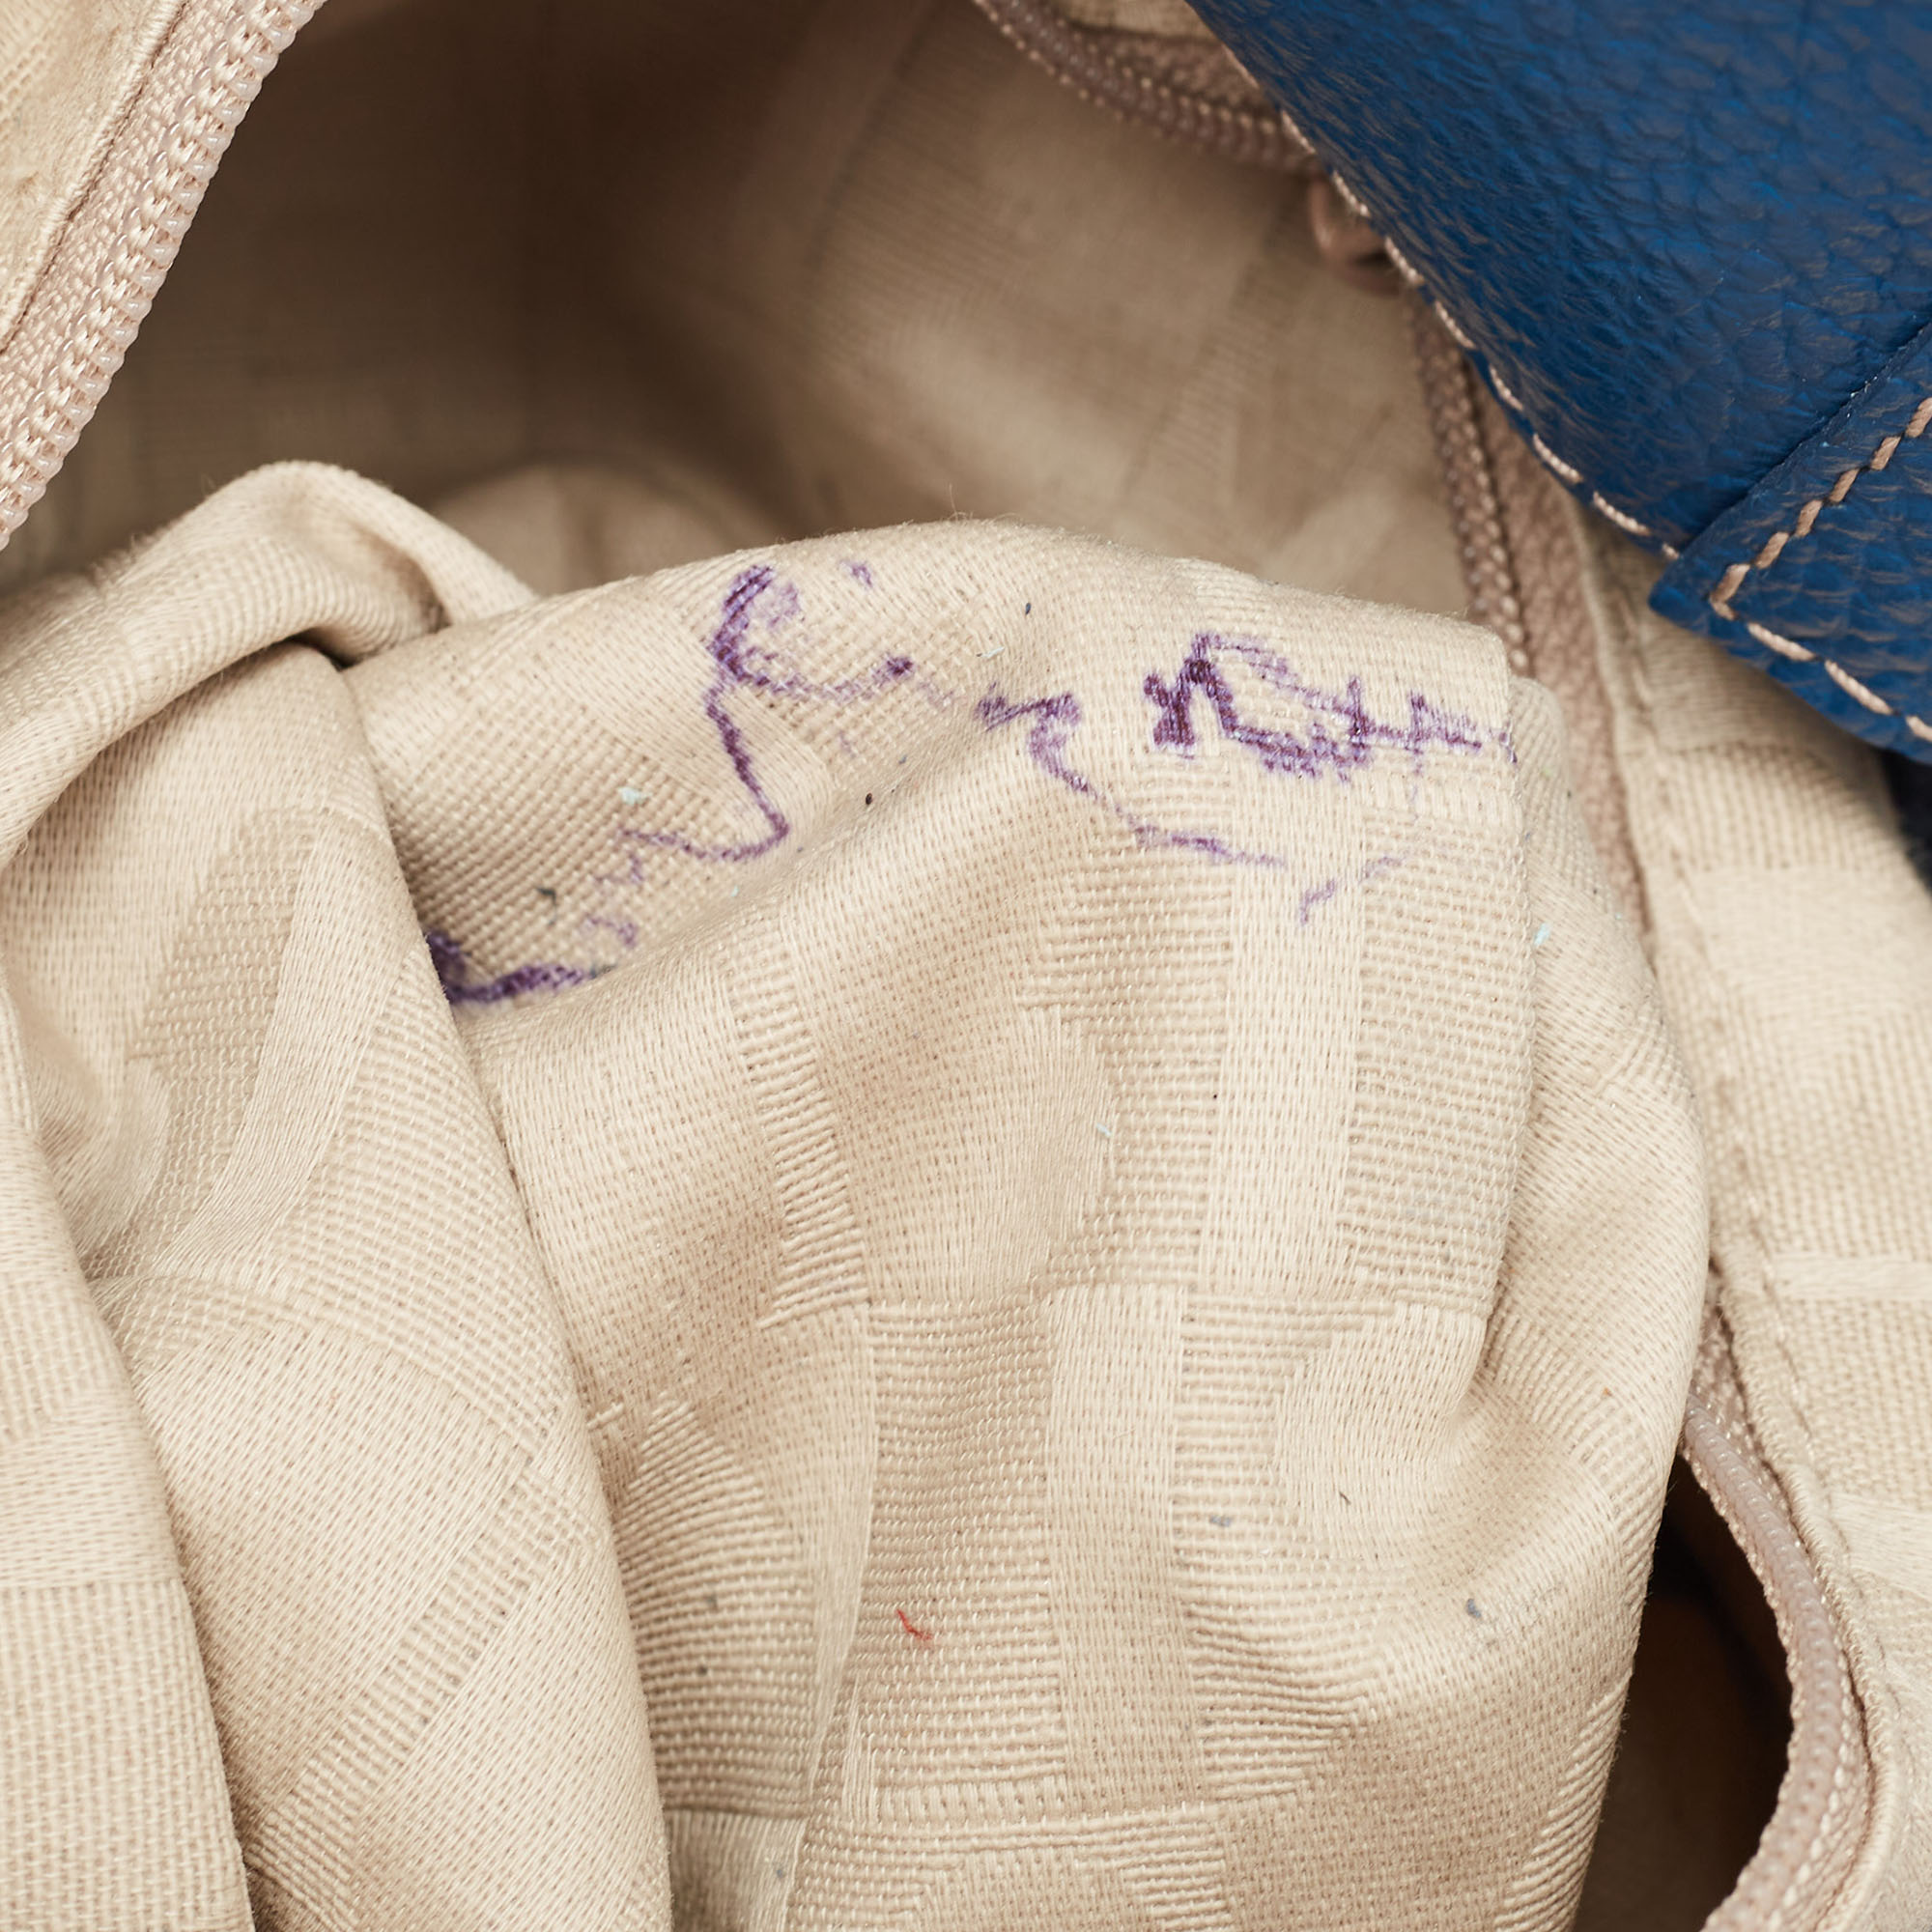 Furla Blue Leather Front Pocket Bucket Bag